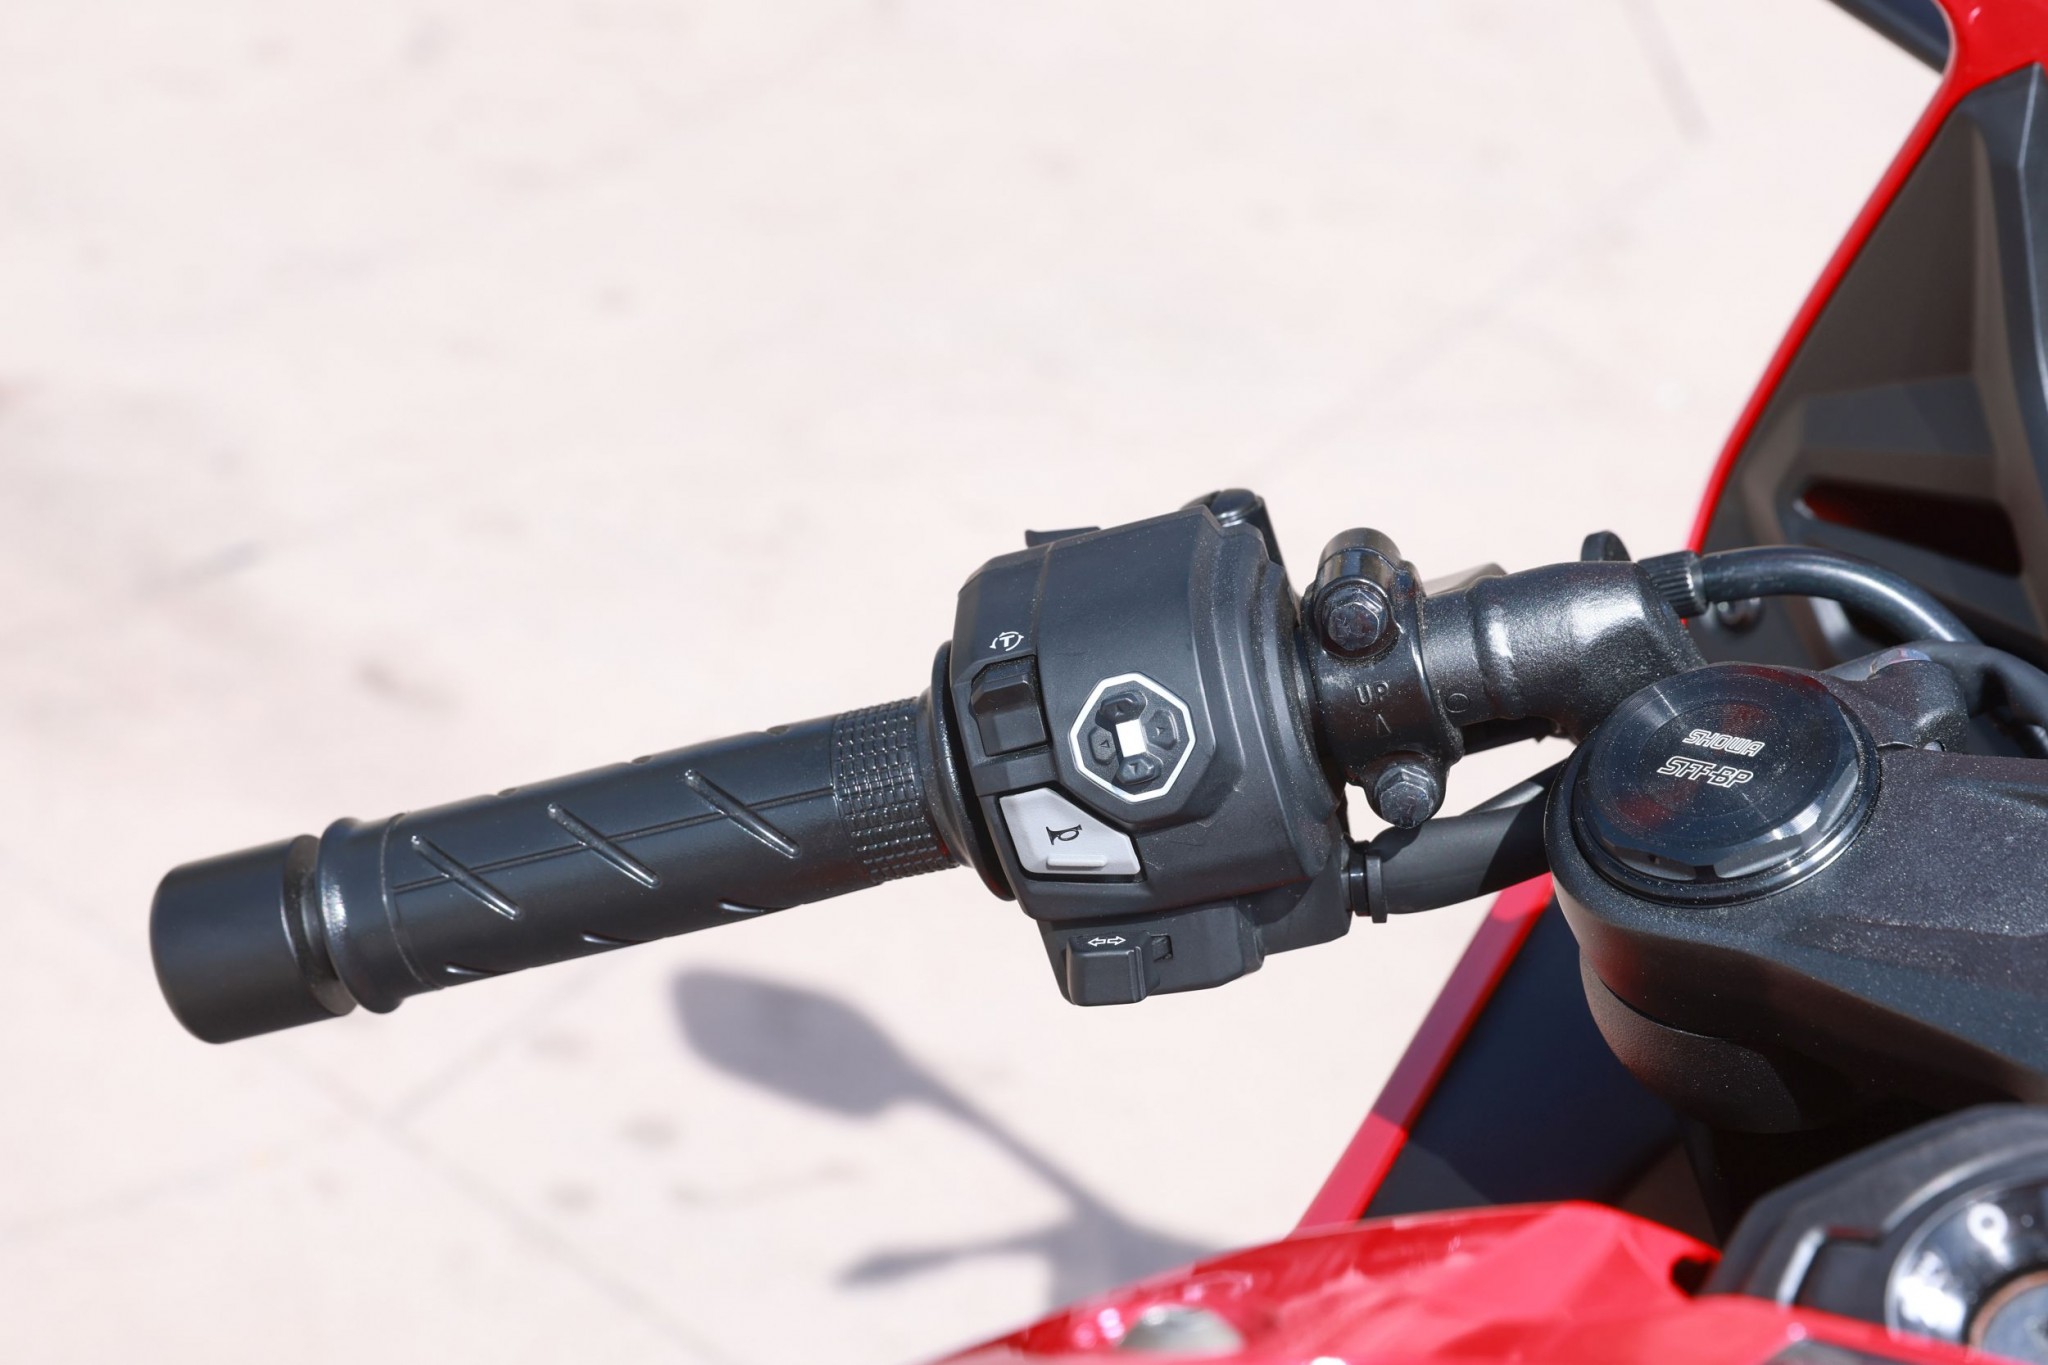 Test elektronske kvačila Honda CBR650R 2024

Honda je nedavno predstavila novu verziju svog popularnog motocikla CBR650R, koji sada dolazi sa elektronskim kvačilom, poznatim kao E-Clutch. Ova inovacija obećava da će olakšati vožnju omogućavajući vozačima da menjaju brzine bez potrebe za ručnim korišćenjem kvačila. 

Elektronsko kvačilo funkcioniše tako što automatski reguliše pritisak potreban za aktiviranje kvačila, što omogućava glatke promene brzina bez prekida u isporuci snage. Ovo je posebno korisno pri vožnji u gradu, gde česte promene brzina mogu biti naporne i otežavaju koncentraciju na saobraćaj.

Testiranje ovog sistema pokazalo je da E-Clutch ne samo da olakšava upravljanje motociklom, već i povećava sigurnost vožnje. Vozači mogu da se fokusiraju na okolinu bez brige o mehaničkim aspektima vožnje, što je posebno važno za manje iskusne vozače.

Honda CBR650R sa elektronskim kvačilom biće dostupna na tržištu od 2024. godine i očekuje se da će privući veliki broj kupaca, kako iskusnih tako i onih koji tek ulaze u svet motociklizma. Ovaj model predstavlja značajan korak napred u tehnologiji motocikala i potencijalno postavlja nove standarde u industriji. - Слика 45